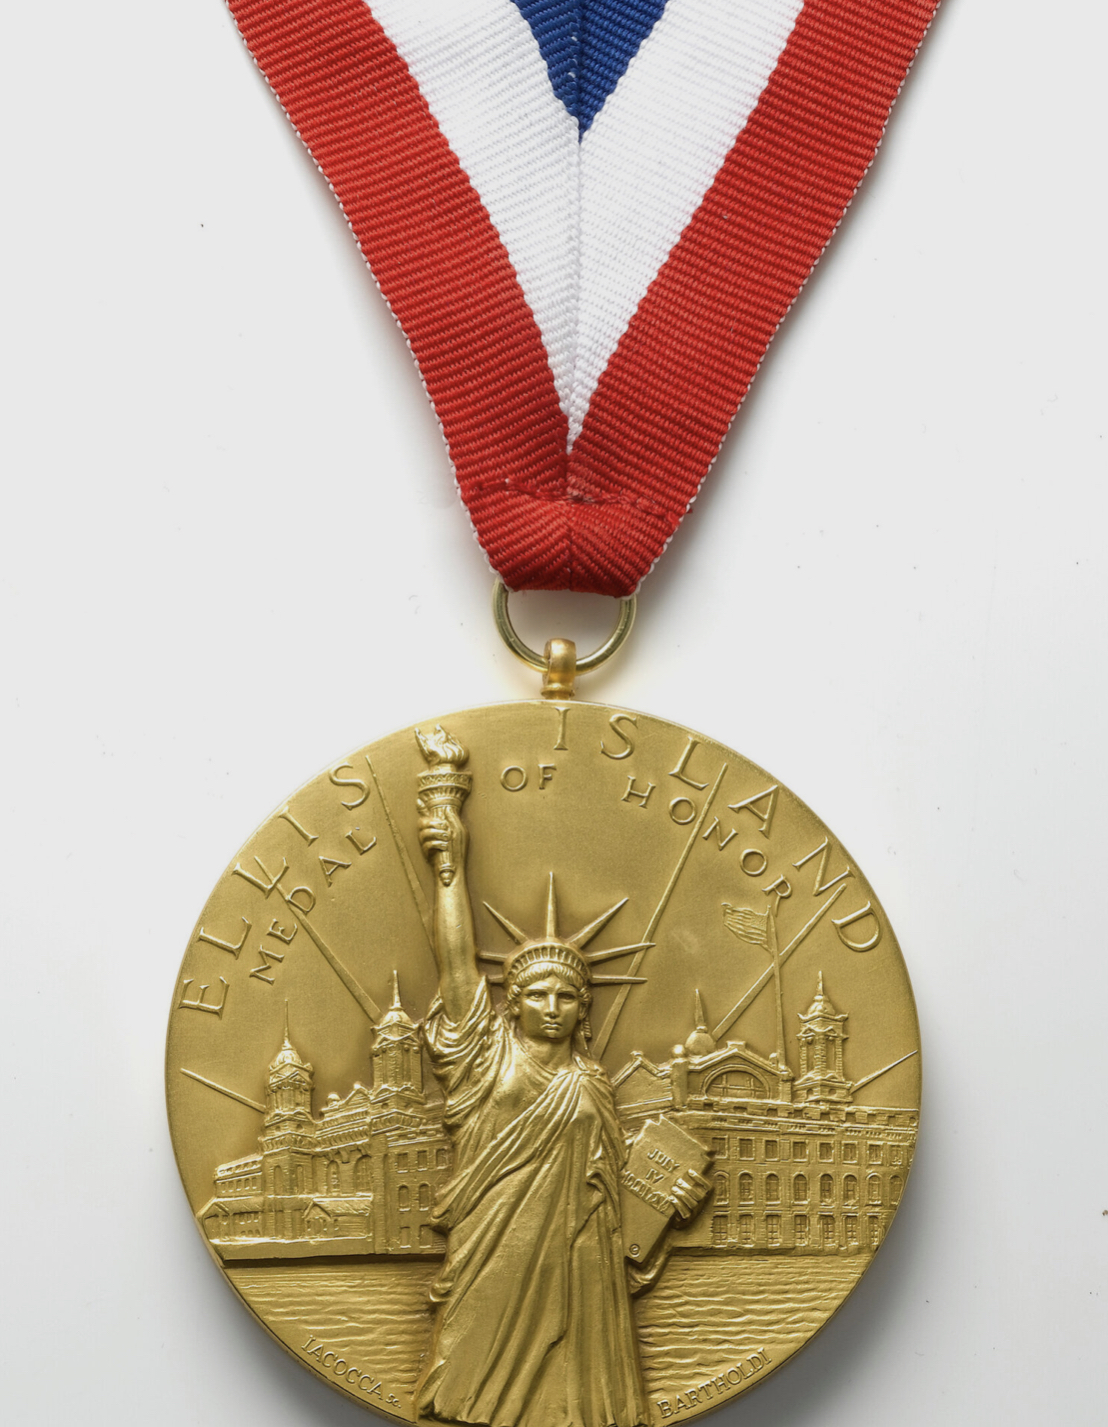 Closeup of an award